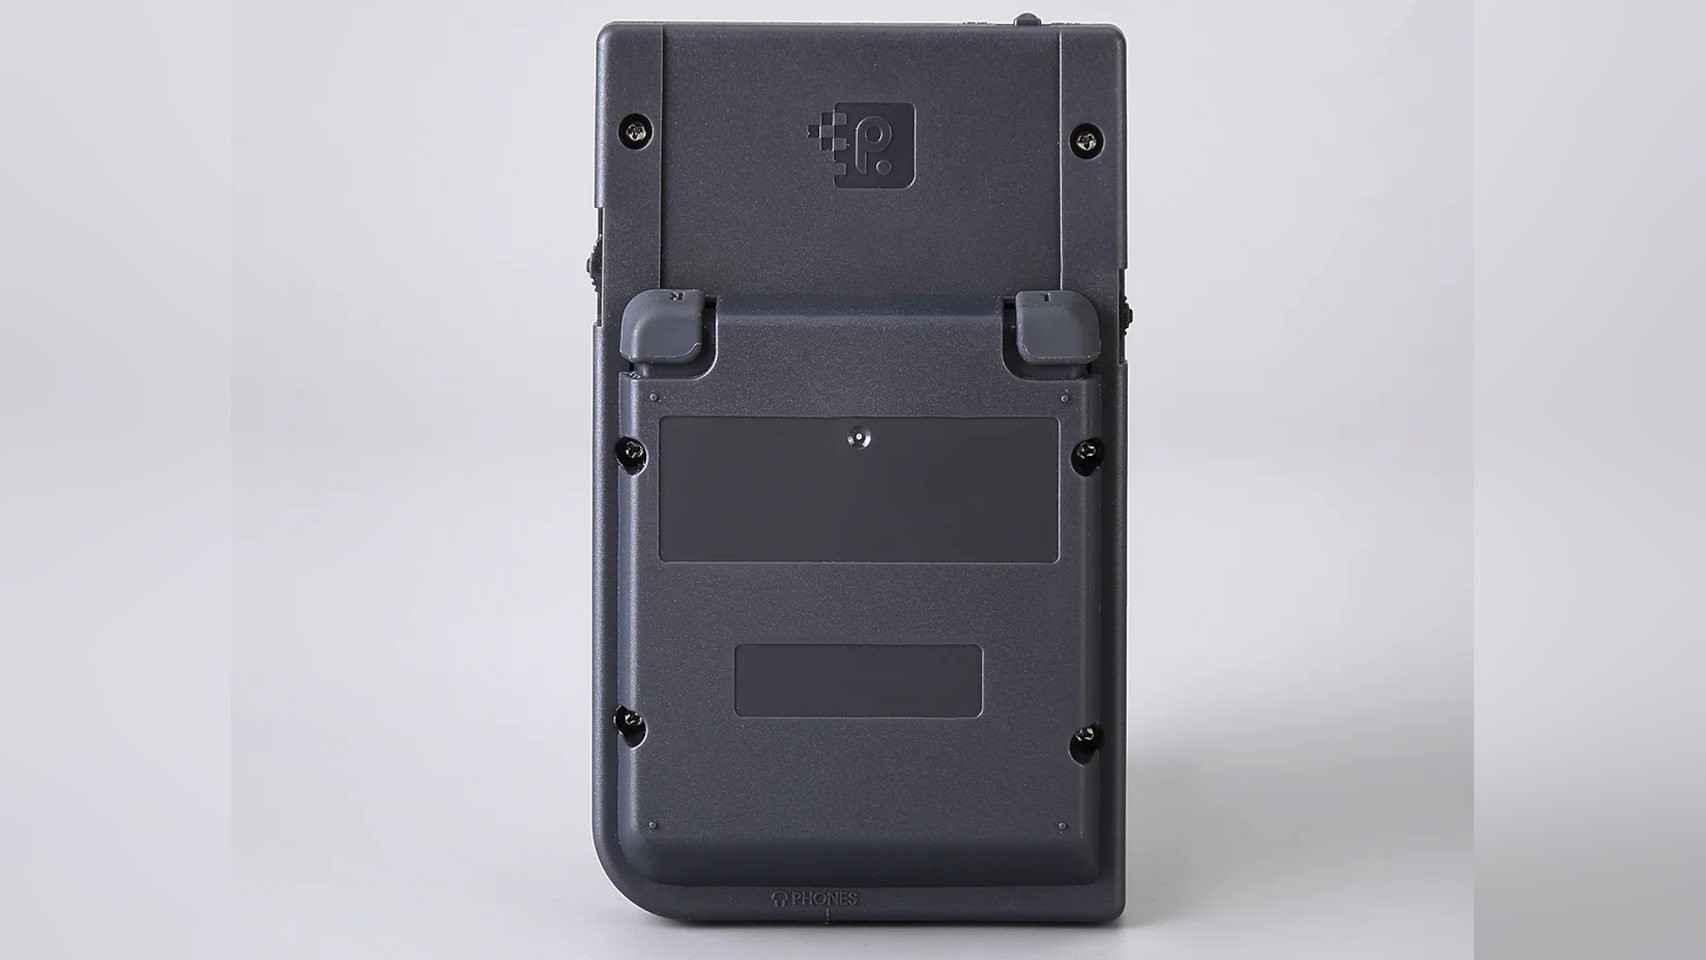 La Retro Pixel Pocket es como una Game Boy, pero con detalles más modernos